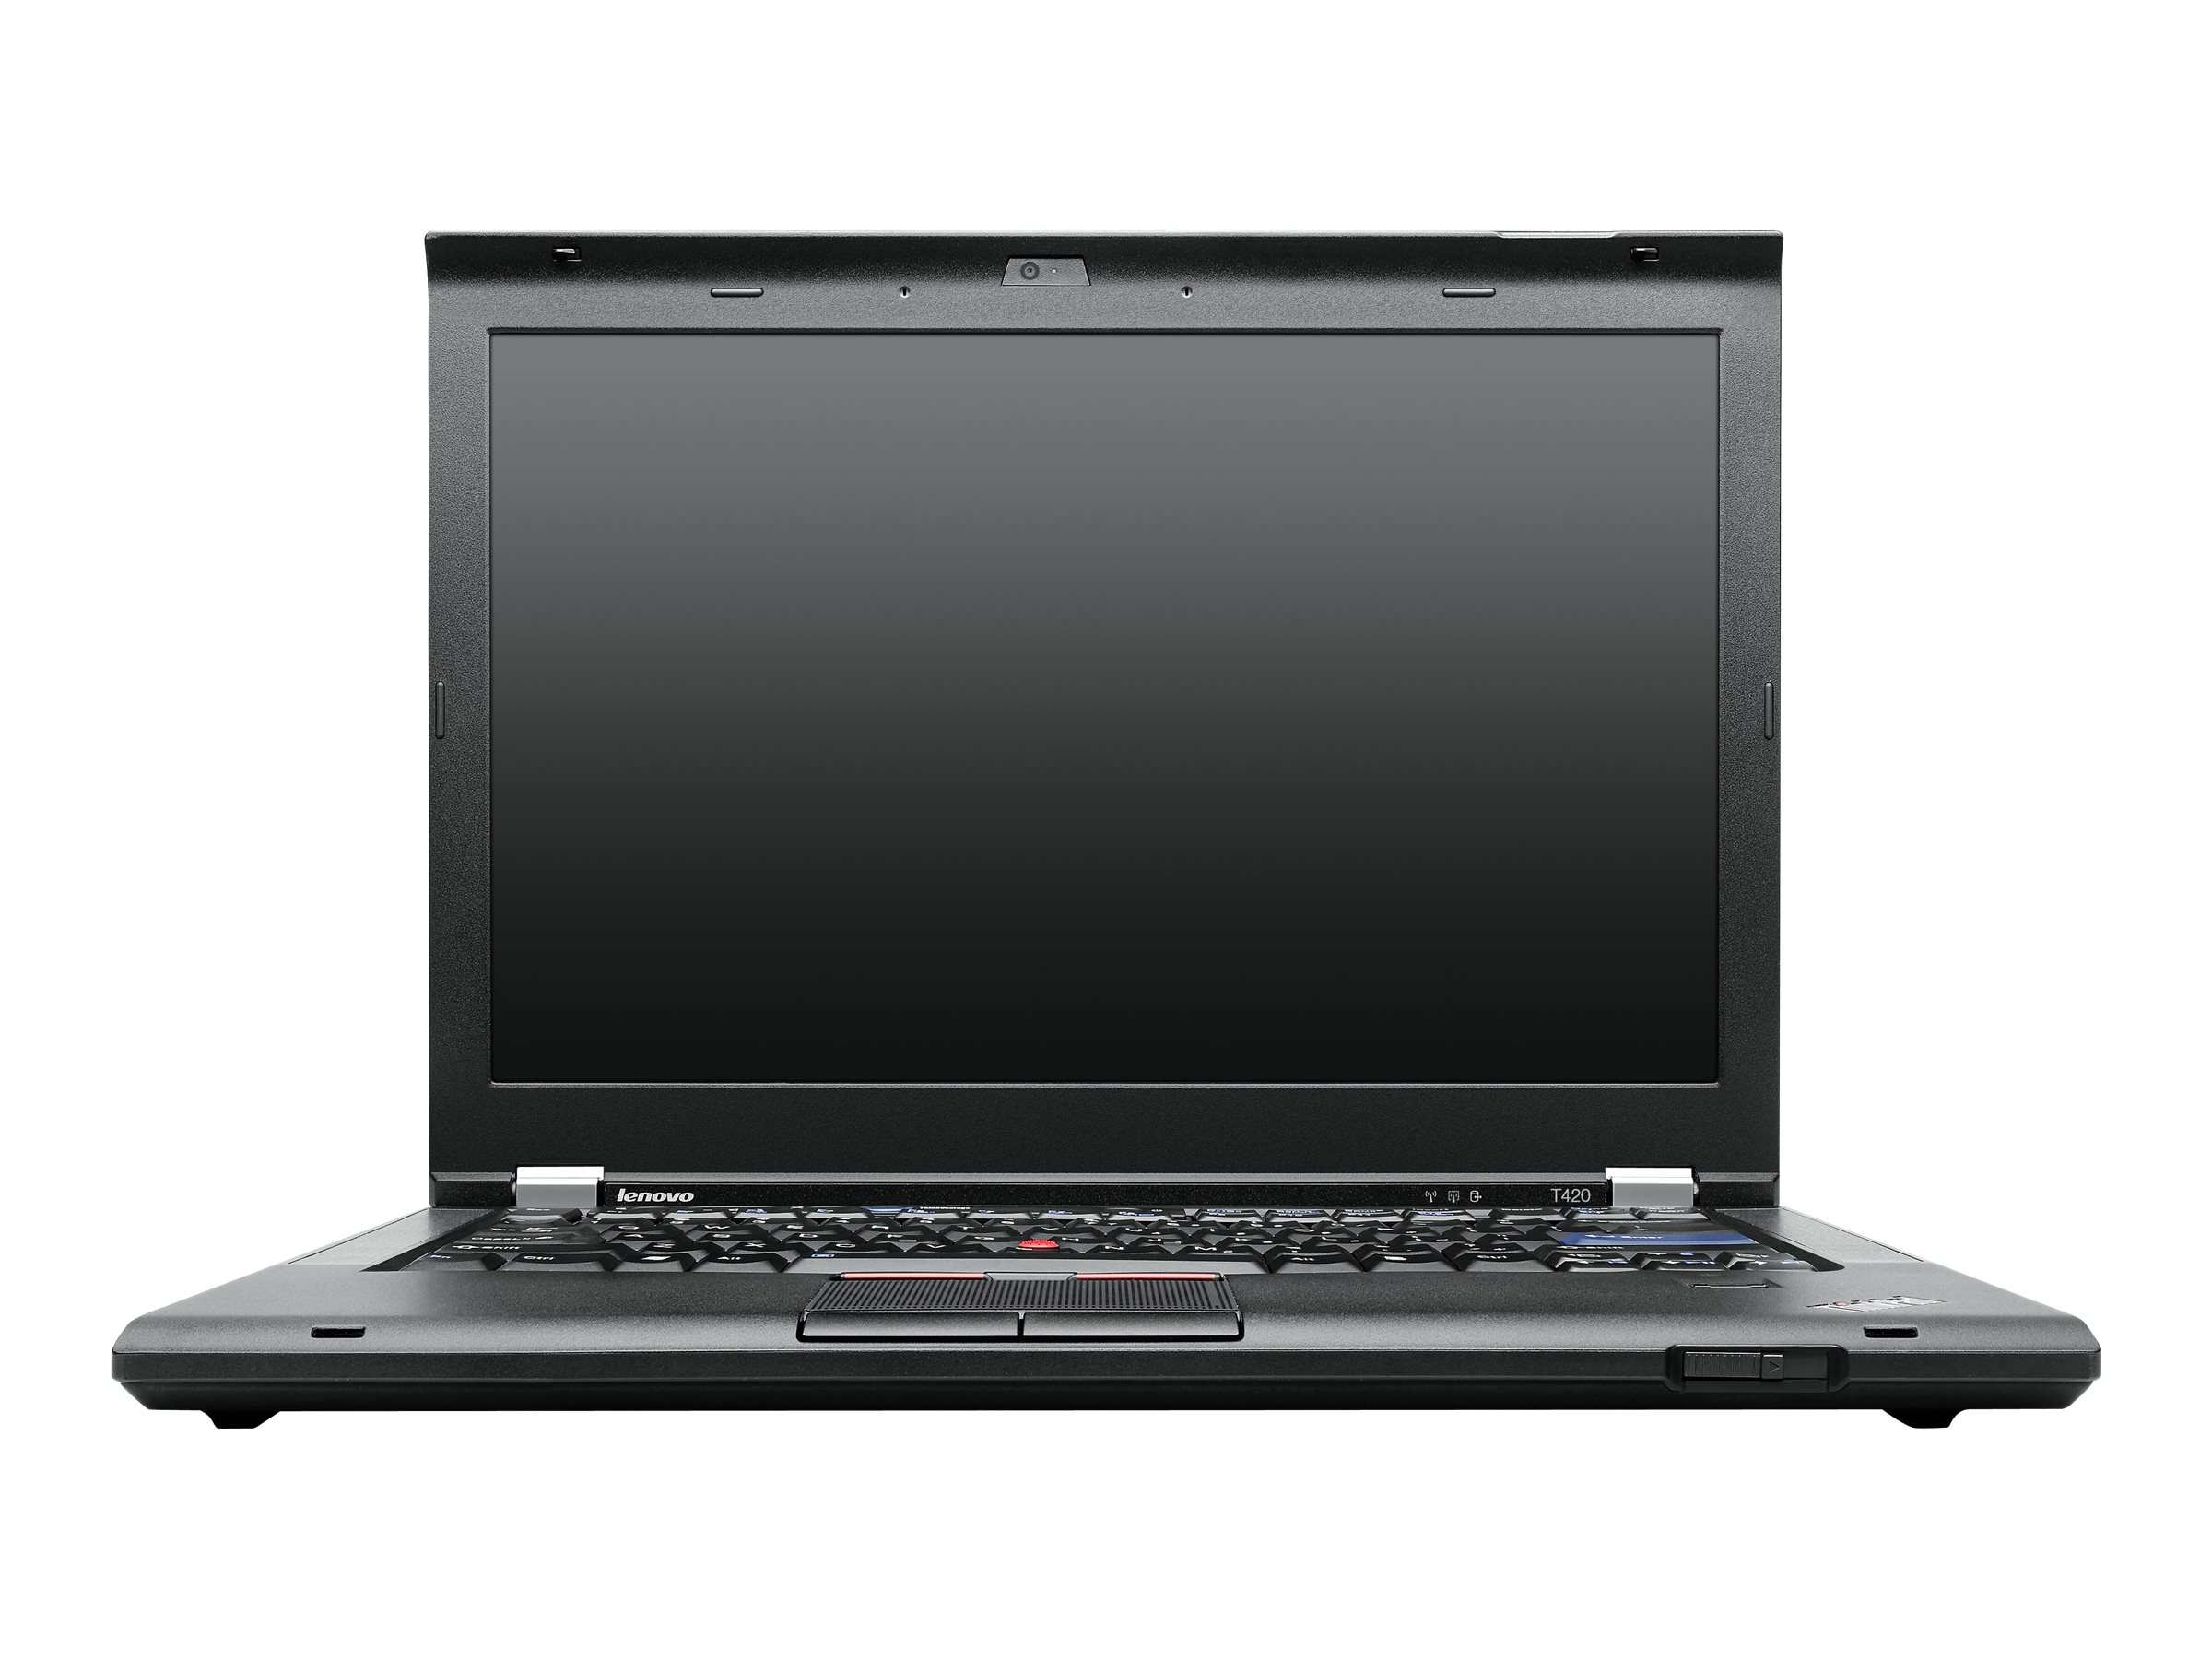 auroch Økonomisk realistisk Lenovo ThinkPad T420 (4180) - full specs, details and review